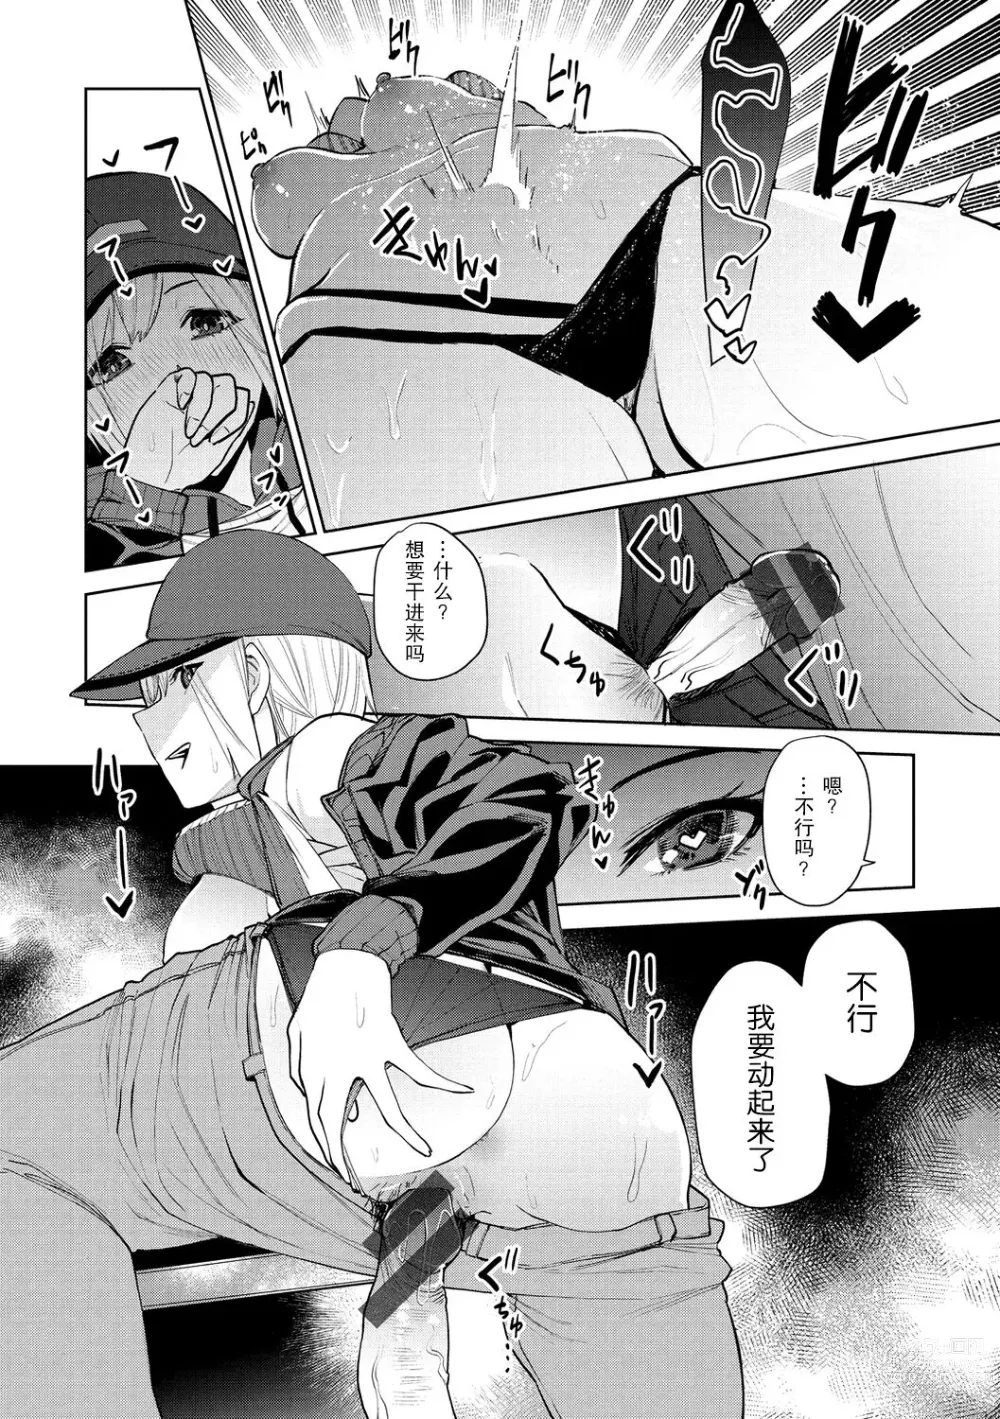 Page 13 of manga 96 - kuro - Black